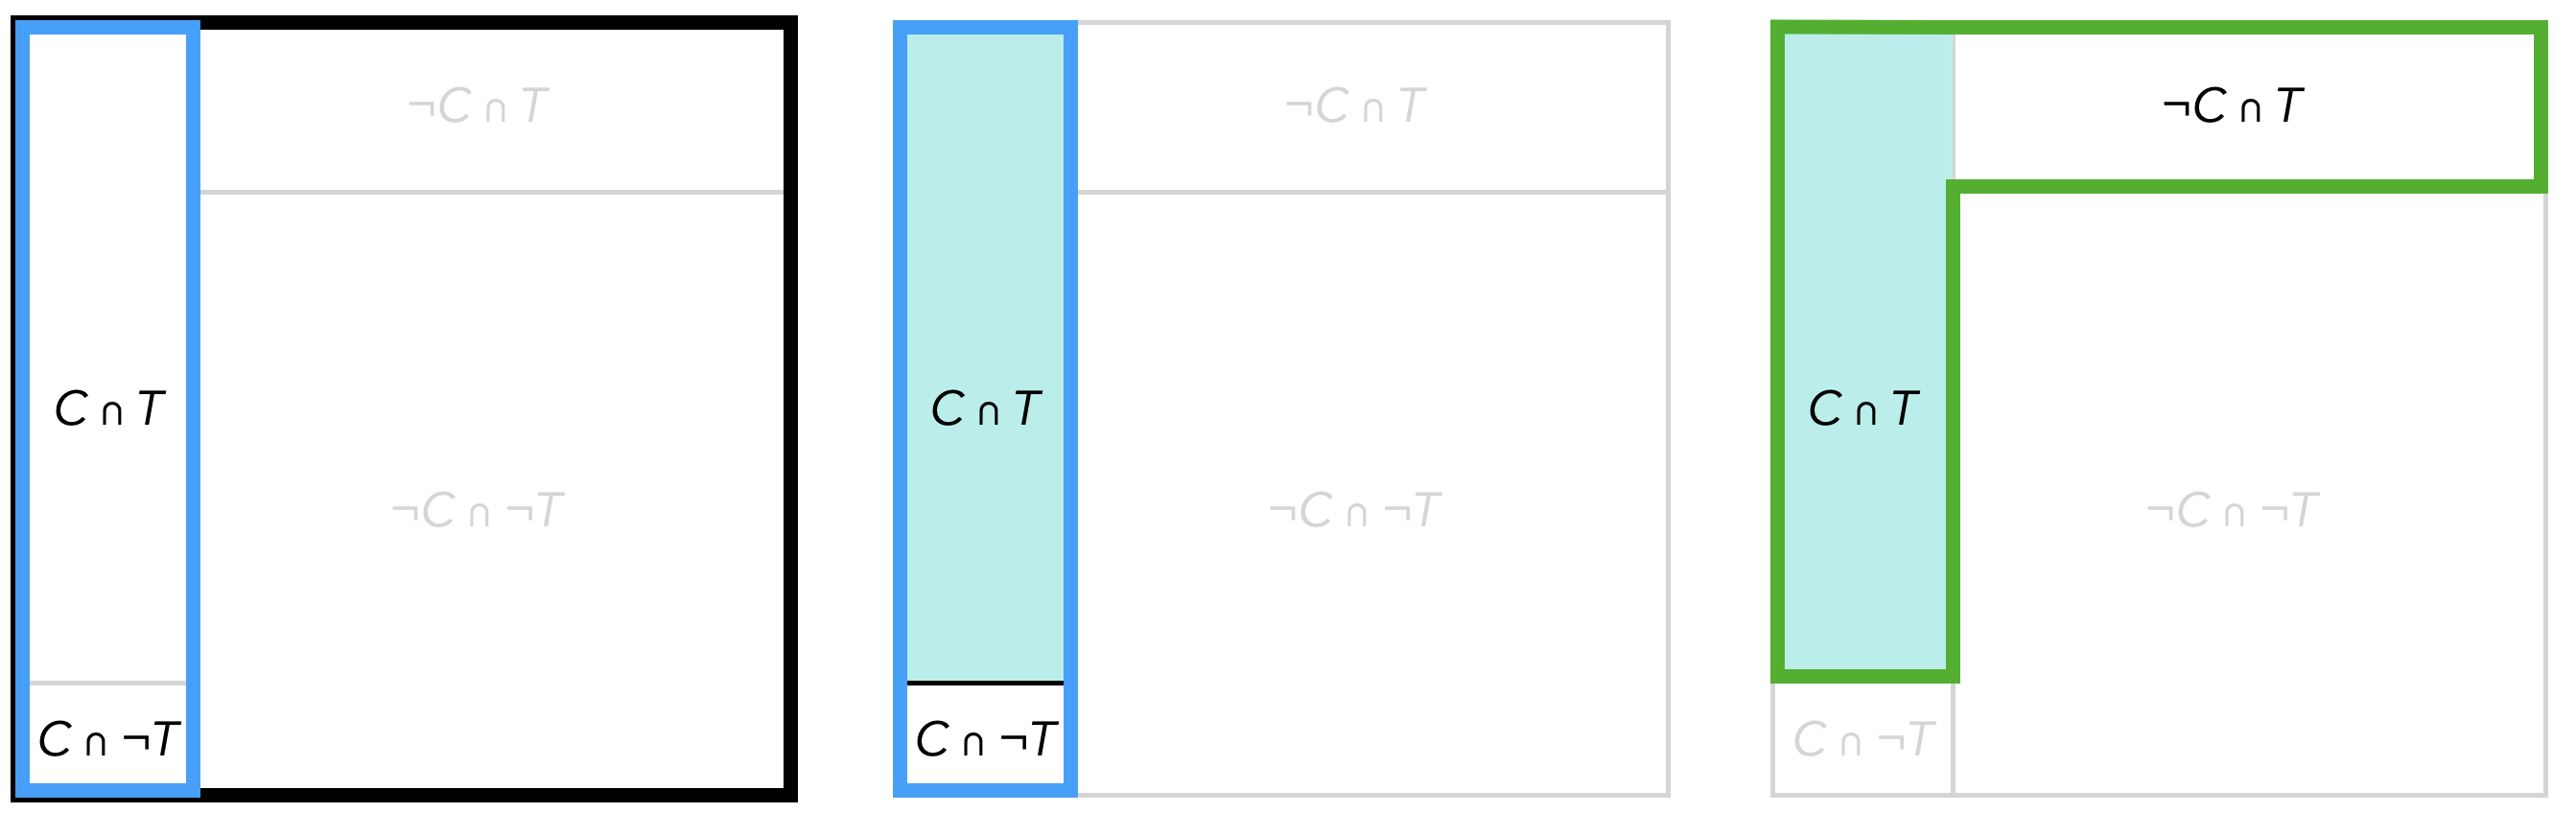 Vierfeldertafeln zur Visualisierung der Wahrscheinlichkeiten $P(C)$, $P_C(T)$ und $P_T(C)$